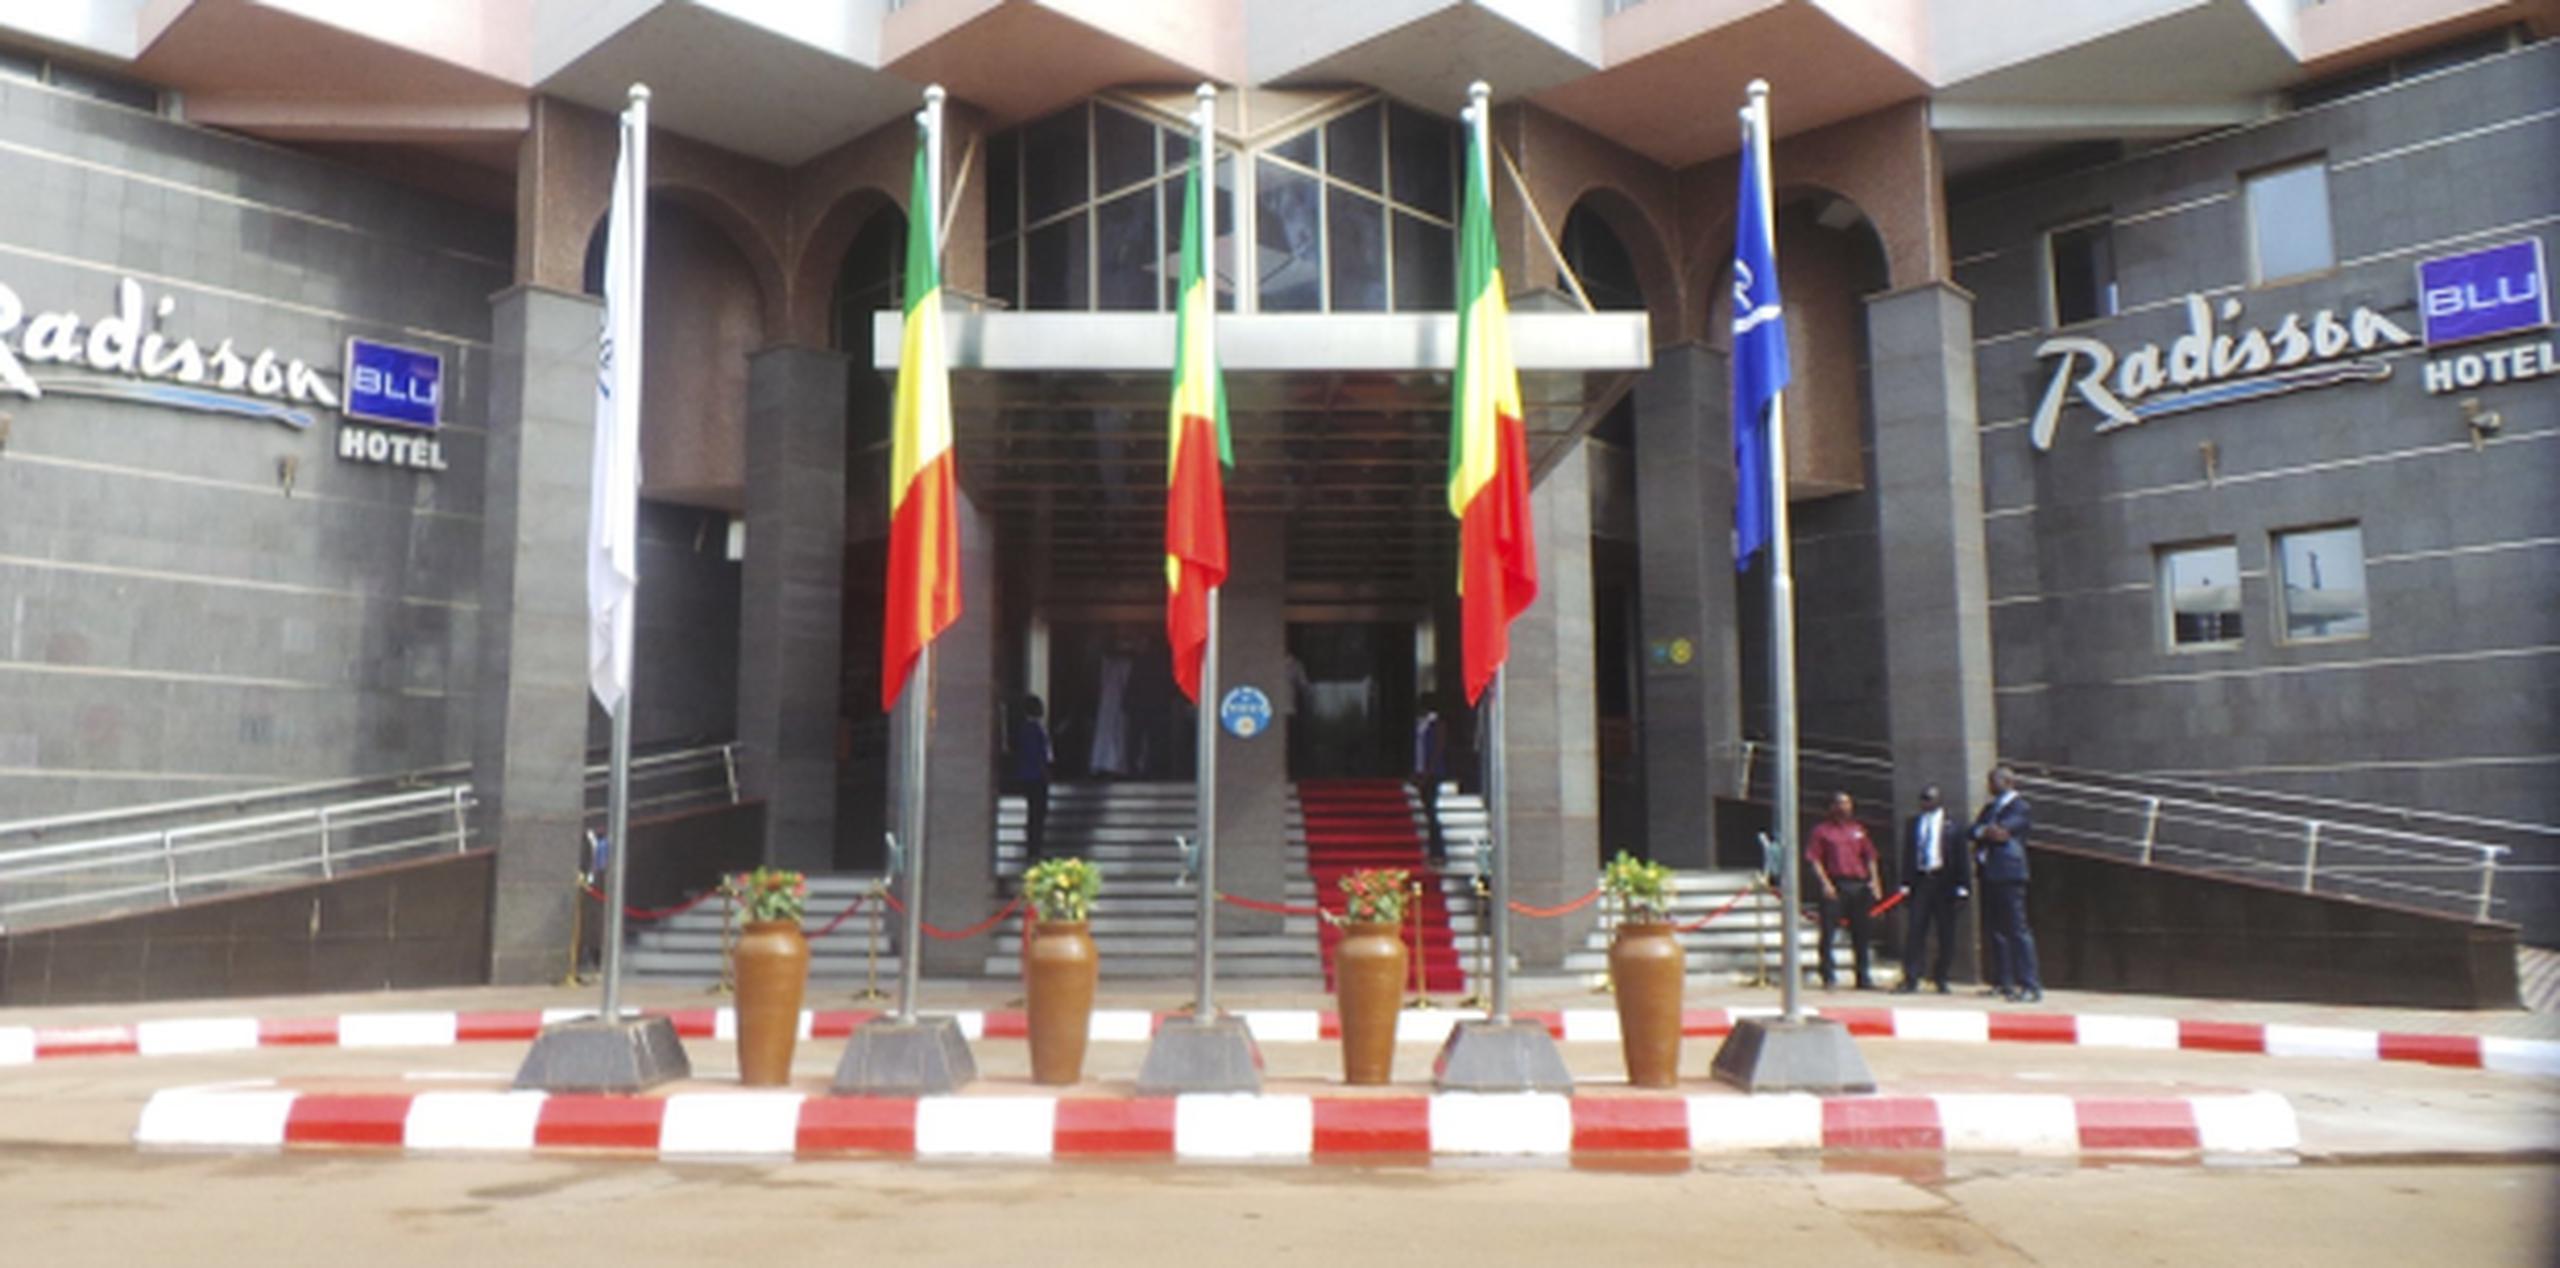 La violencia en Mali ha tomado muchas formas. Este hotel reabrió recientemente ctras ser objeto de un ataque terrorista (EFE)